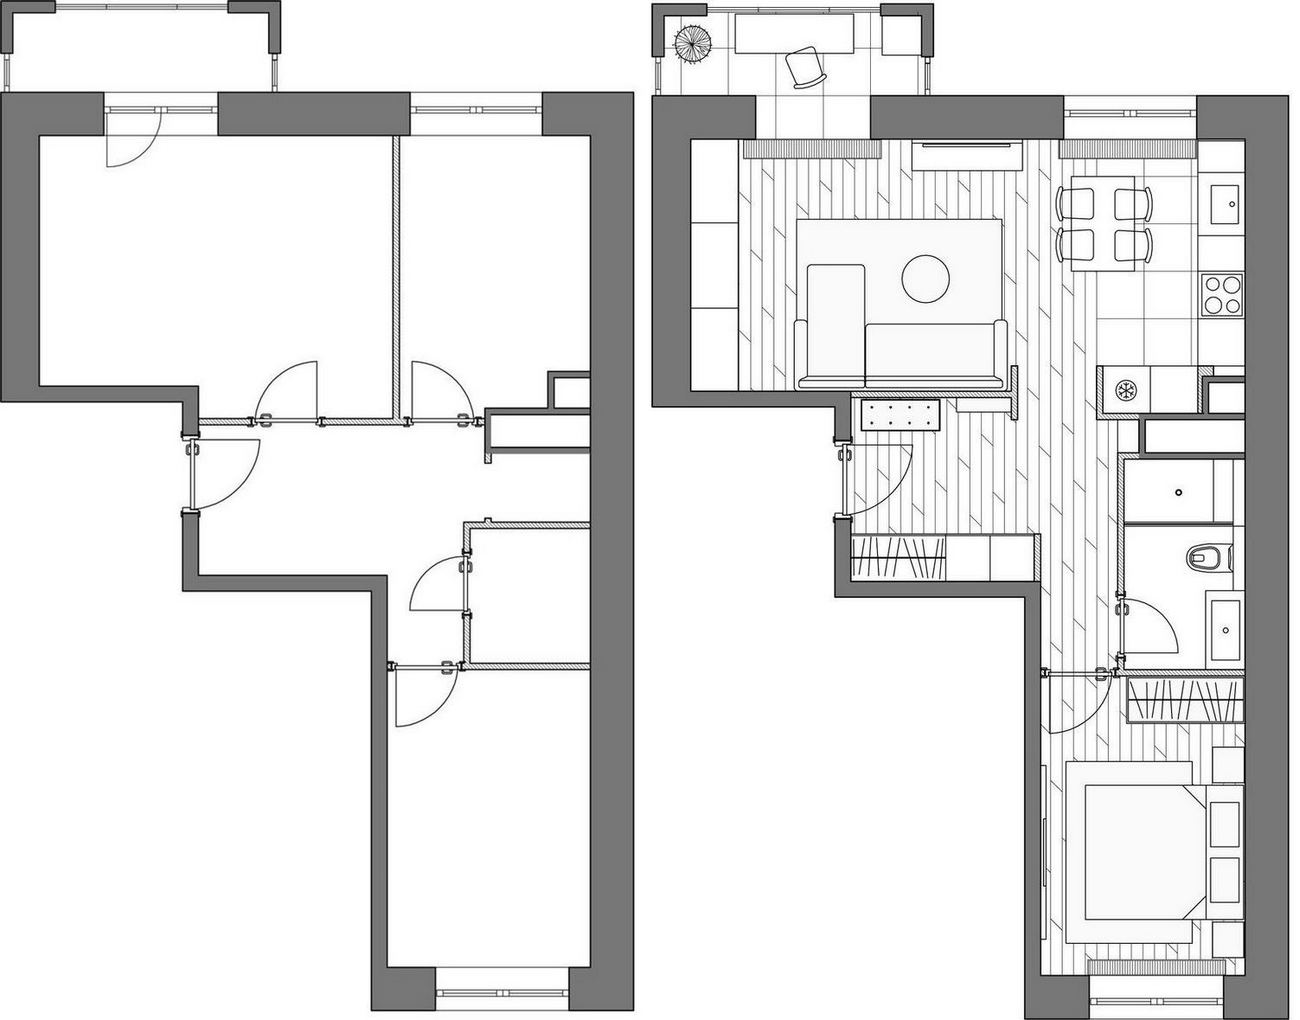 Alaprajz - Egyszerű, könnyű, világos és letisztult berendezés 46m2-en - nagyon jól tervezett elosztás és funkcionalitás kétszobás lakásban